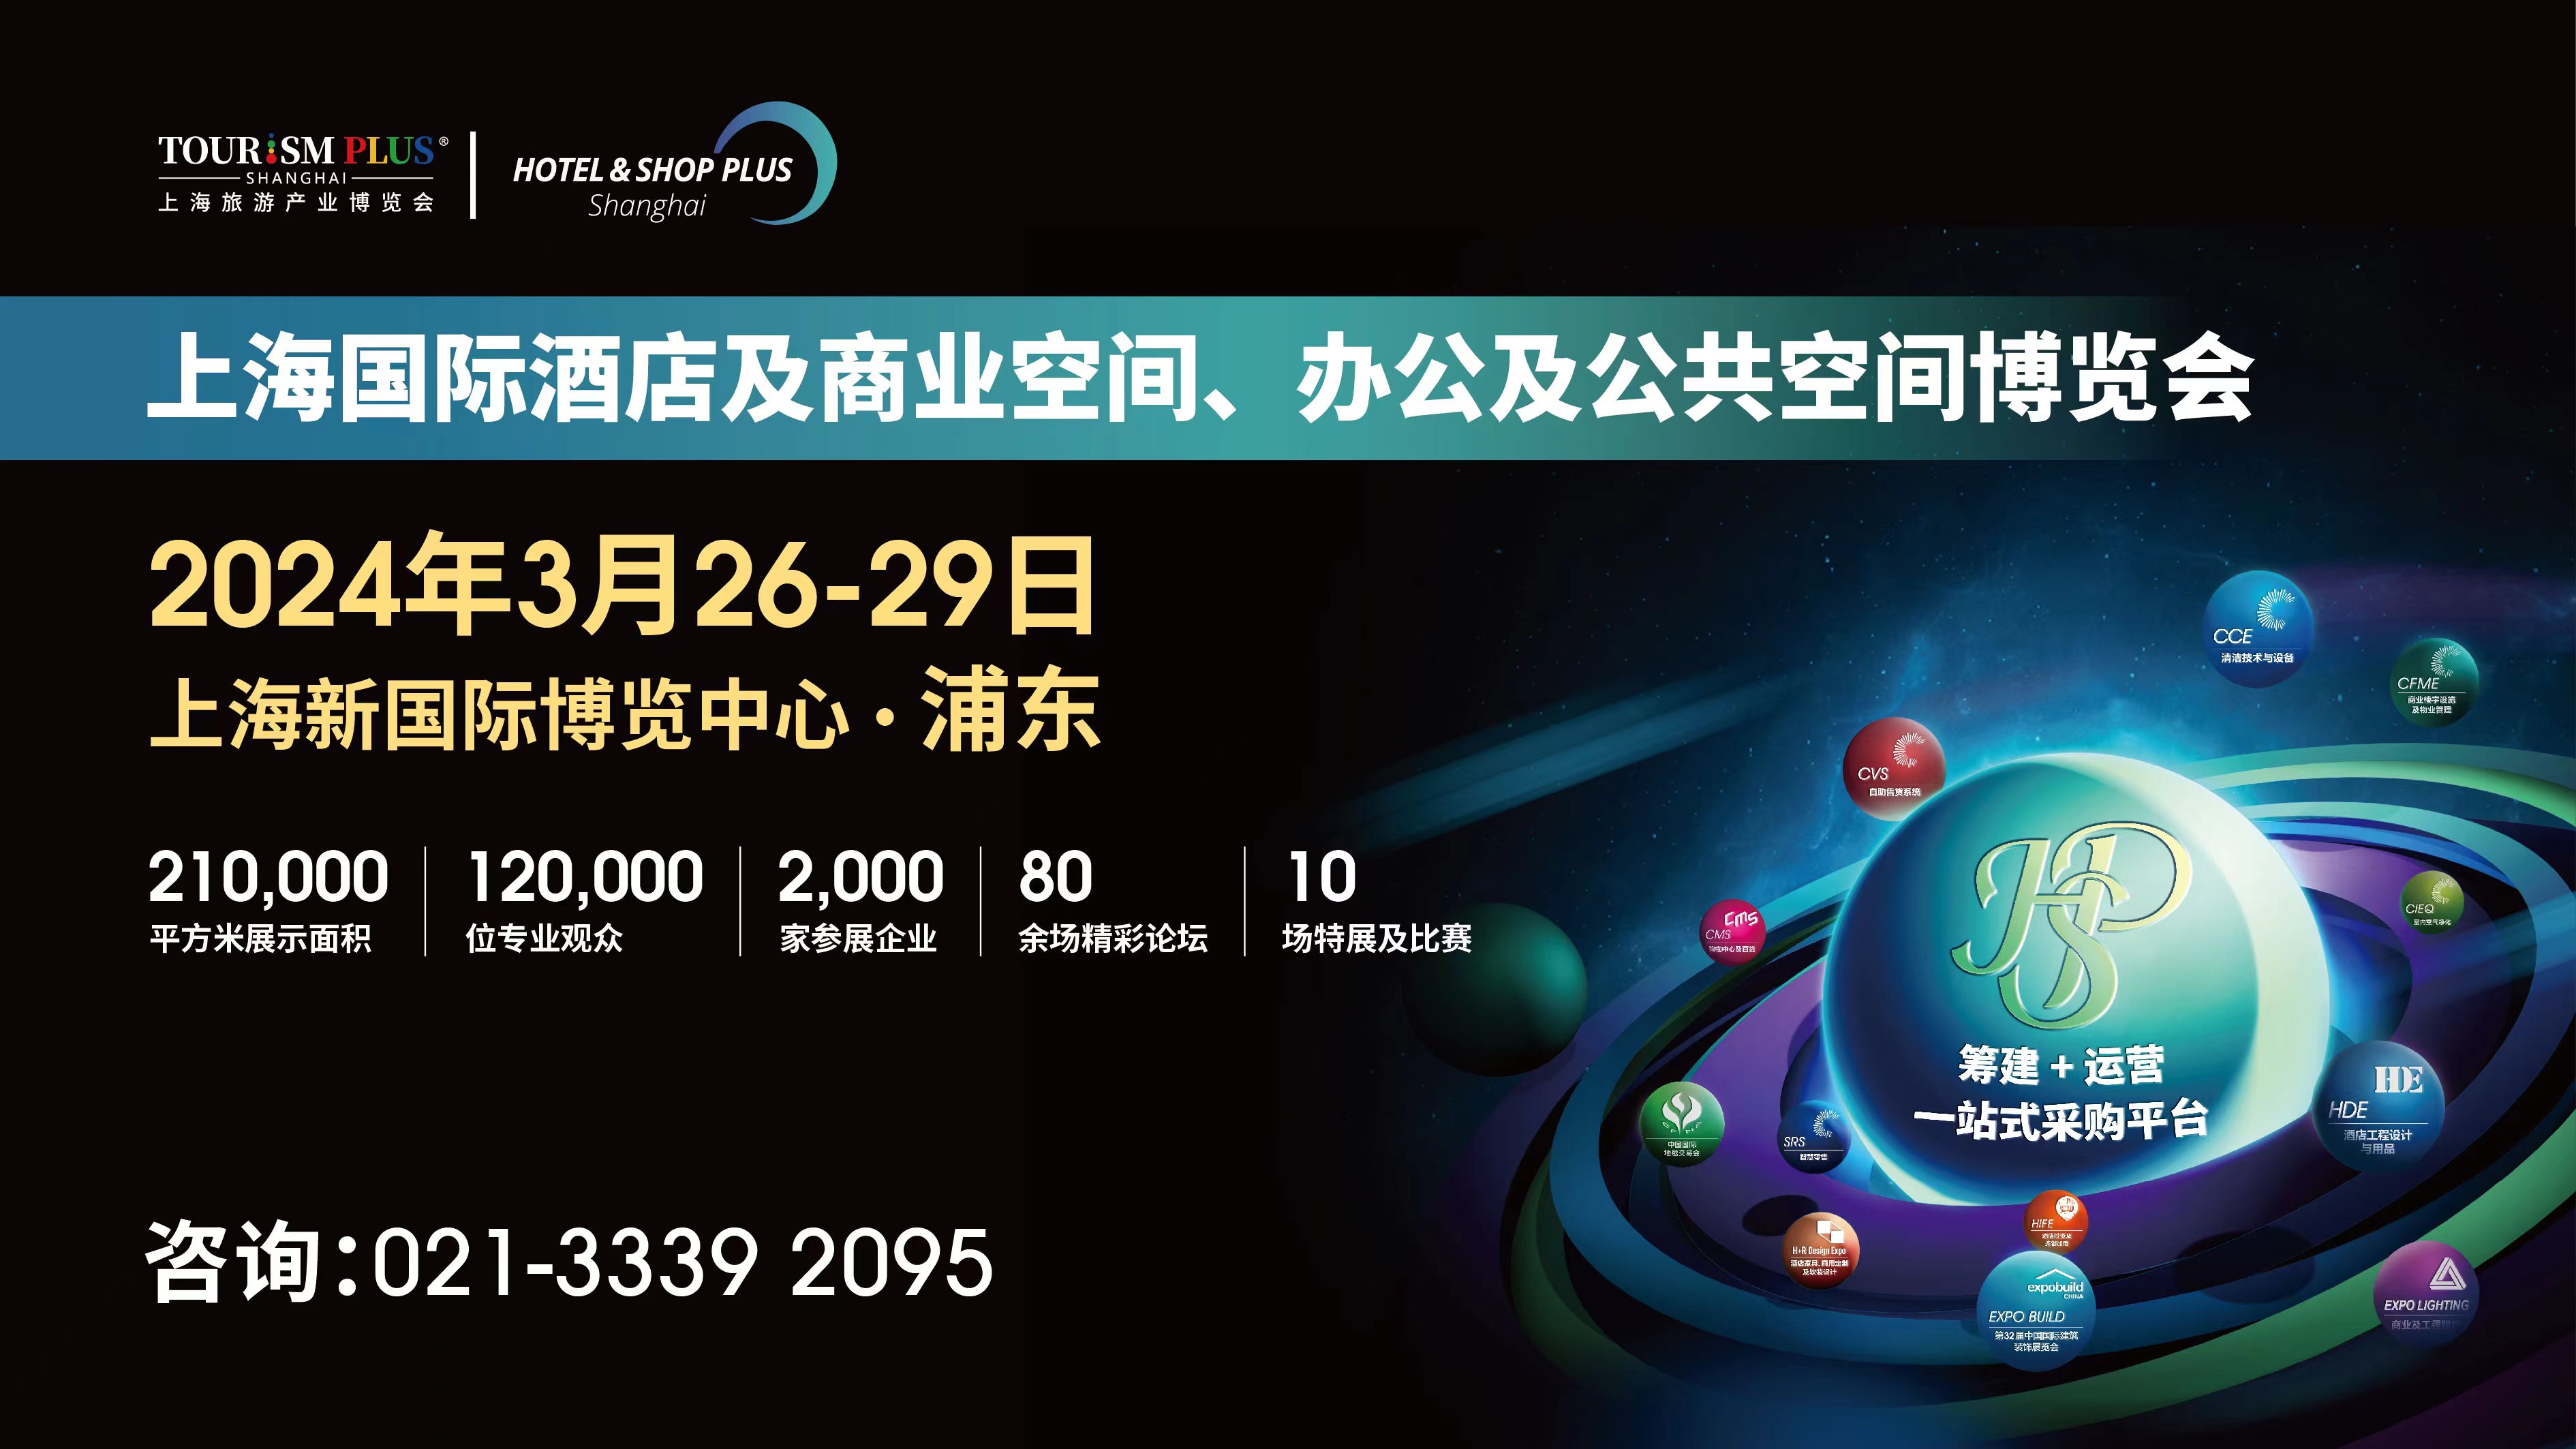 IKC与您相约2024年上海国际酒店及商业空间展